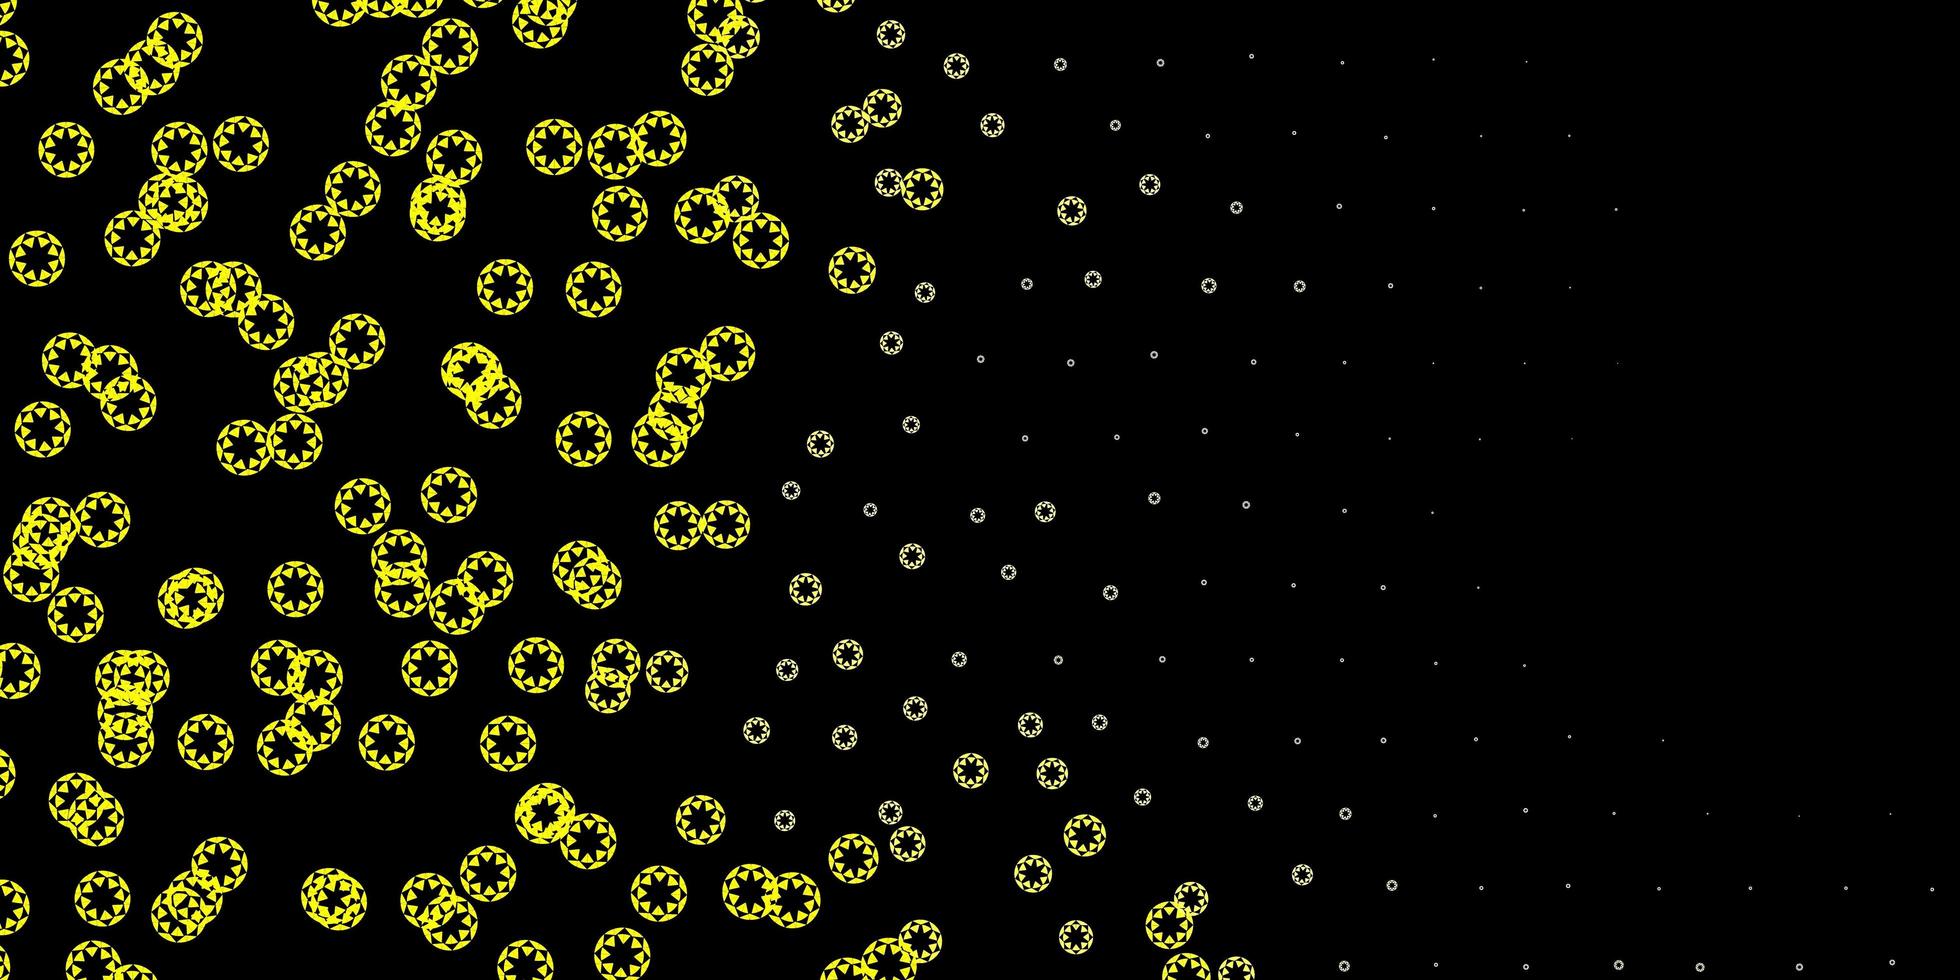 patrón de vector amarillo oscuro con esferas